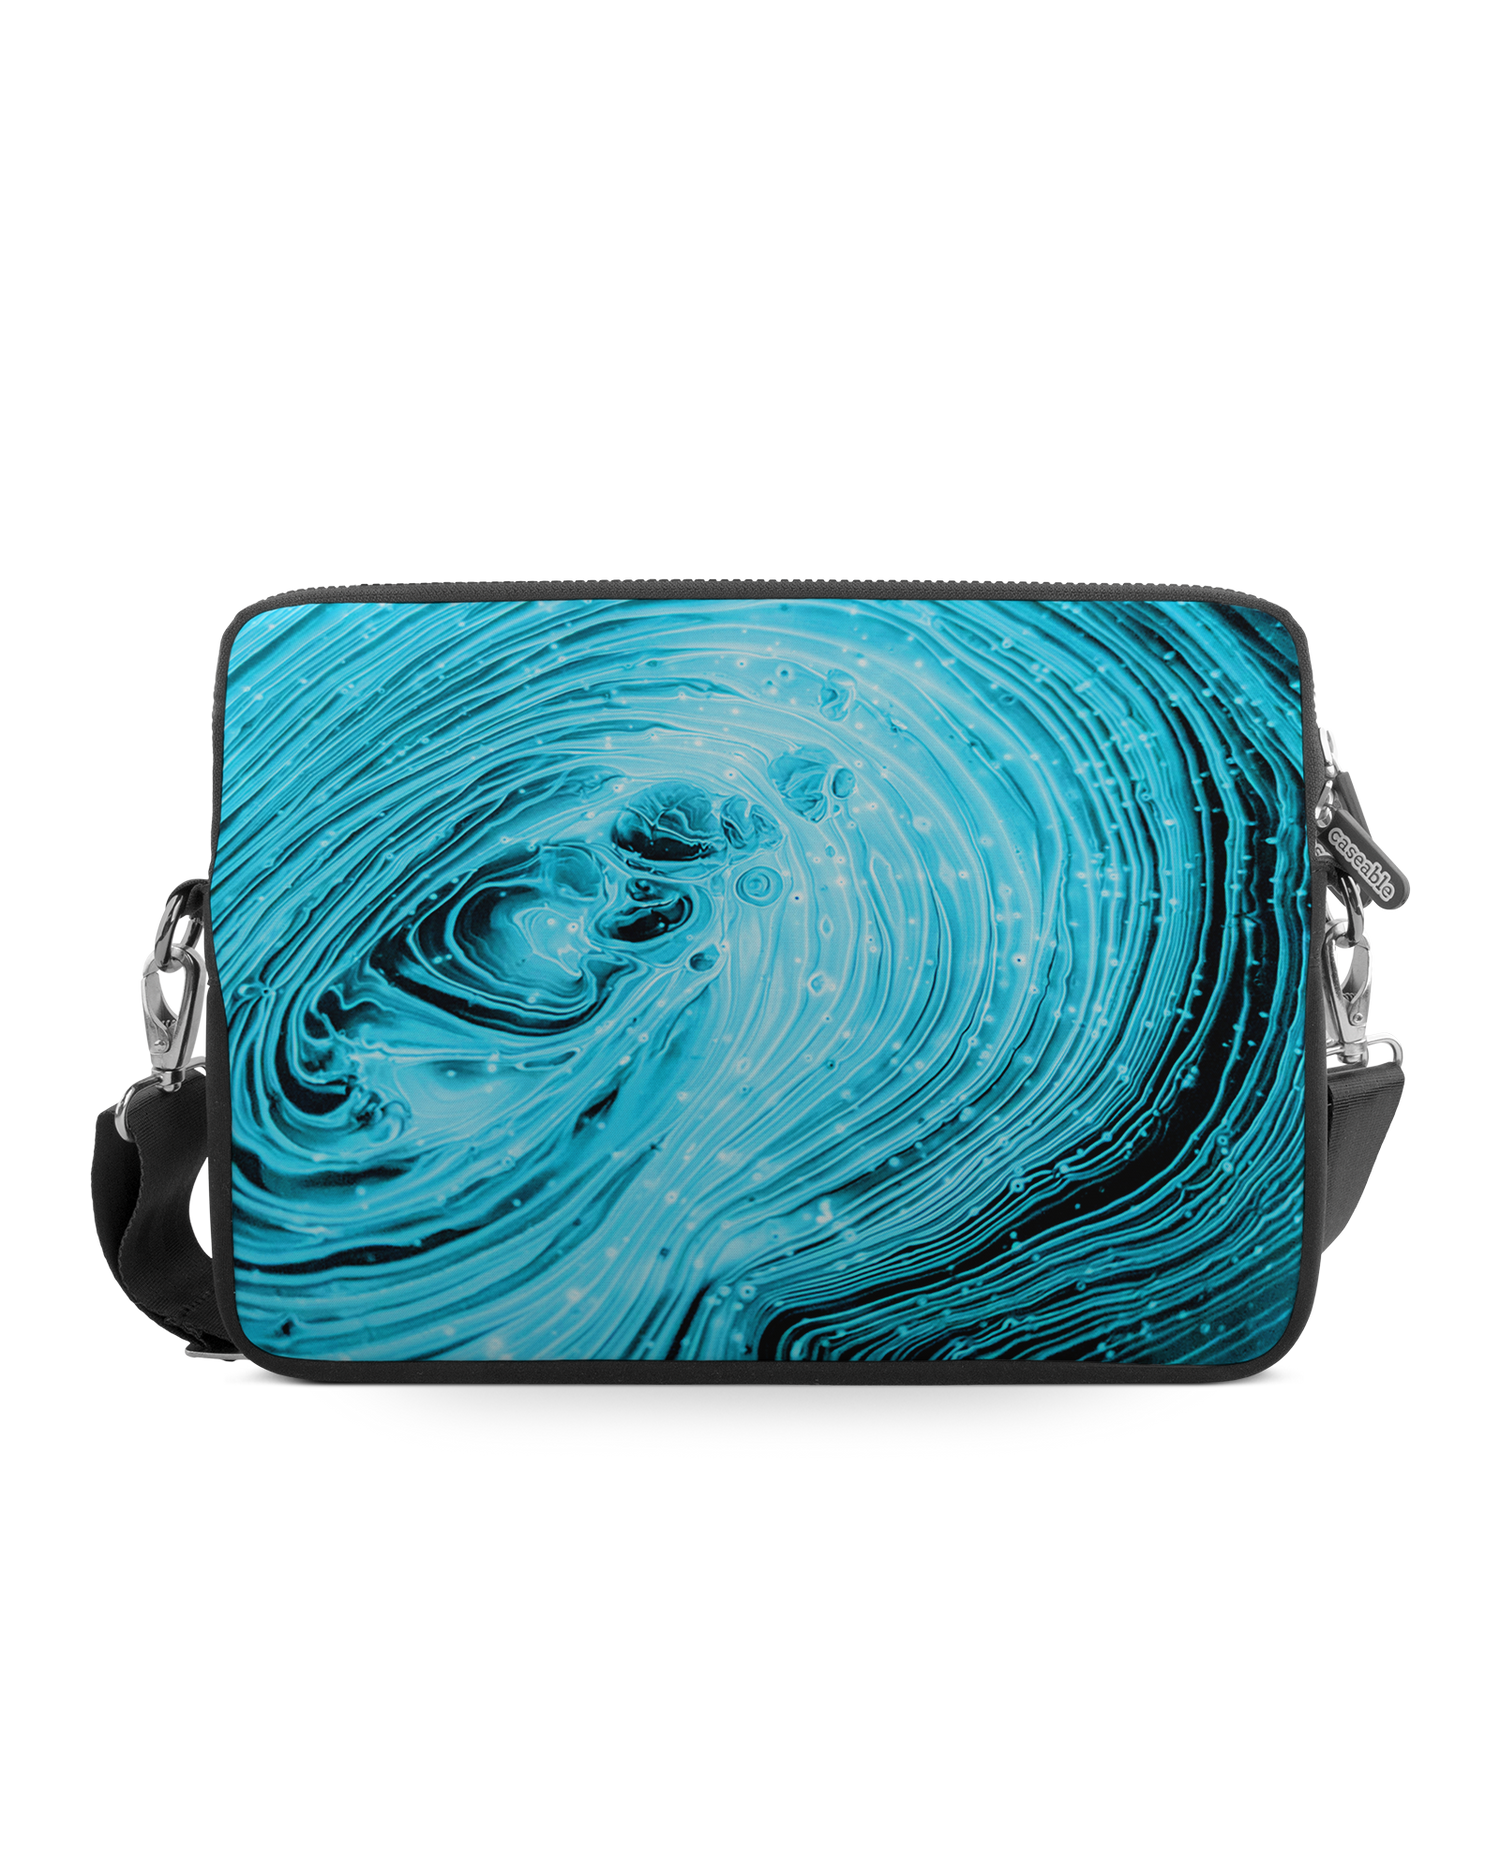 Turquoise Ripples Premium Laptoptasche 13-14 Zoll: Vorderansicht